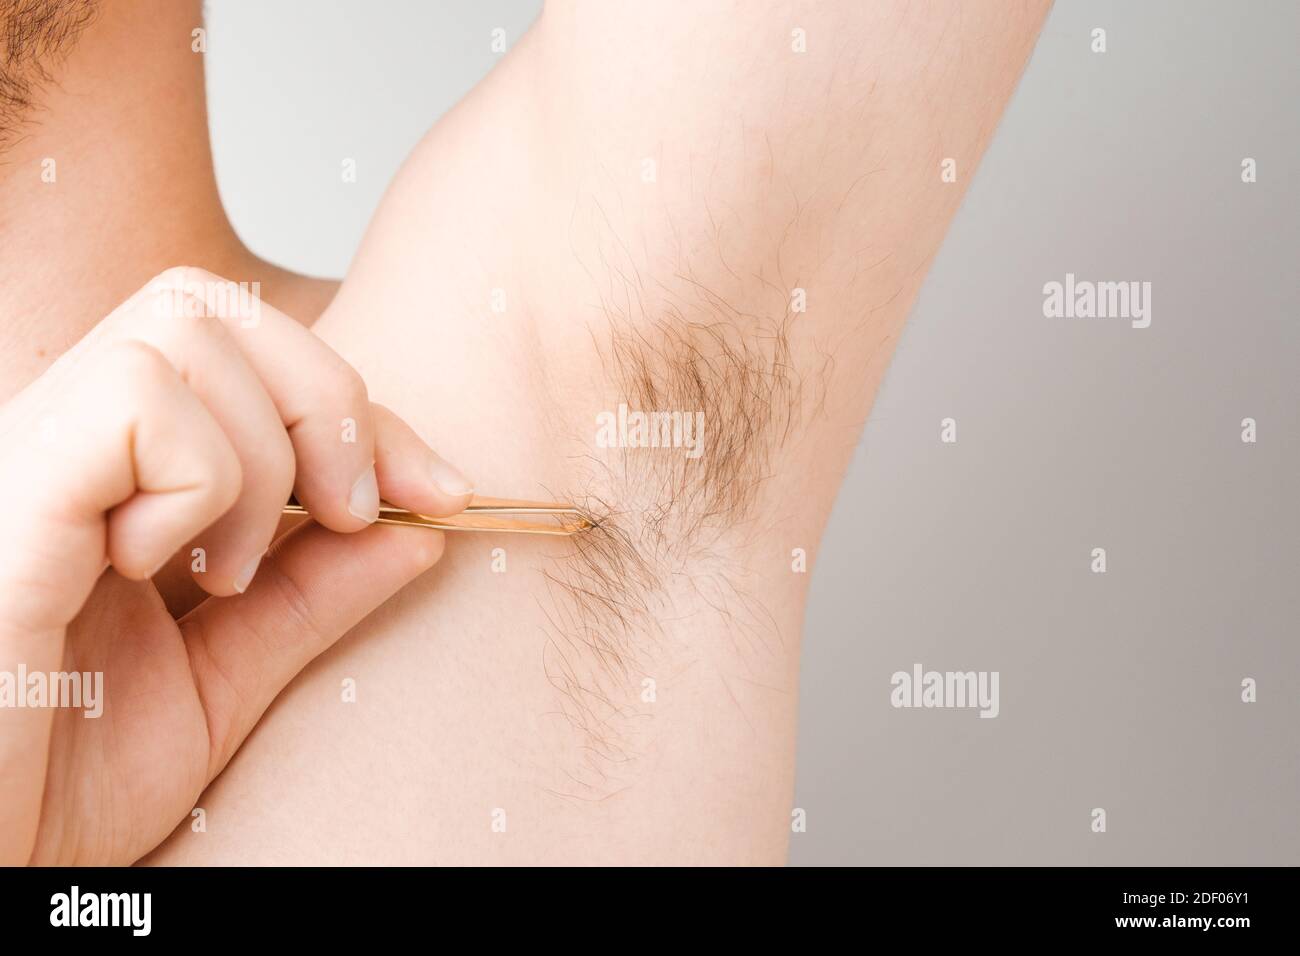 L'homme enlève les cheveux à l'aide d'une pince à épiler de l'aisselle.  Aisselles ou aisselles non rasées. Épilation et procédure d'épilation,  concept d'épilation du corps Photo Stock - Alamy